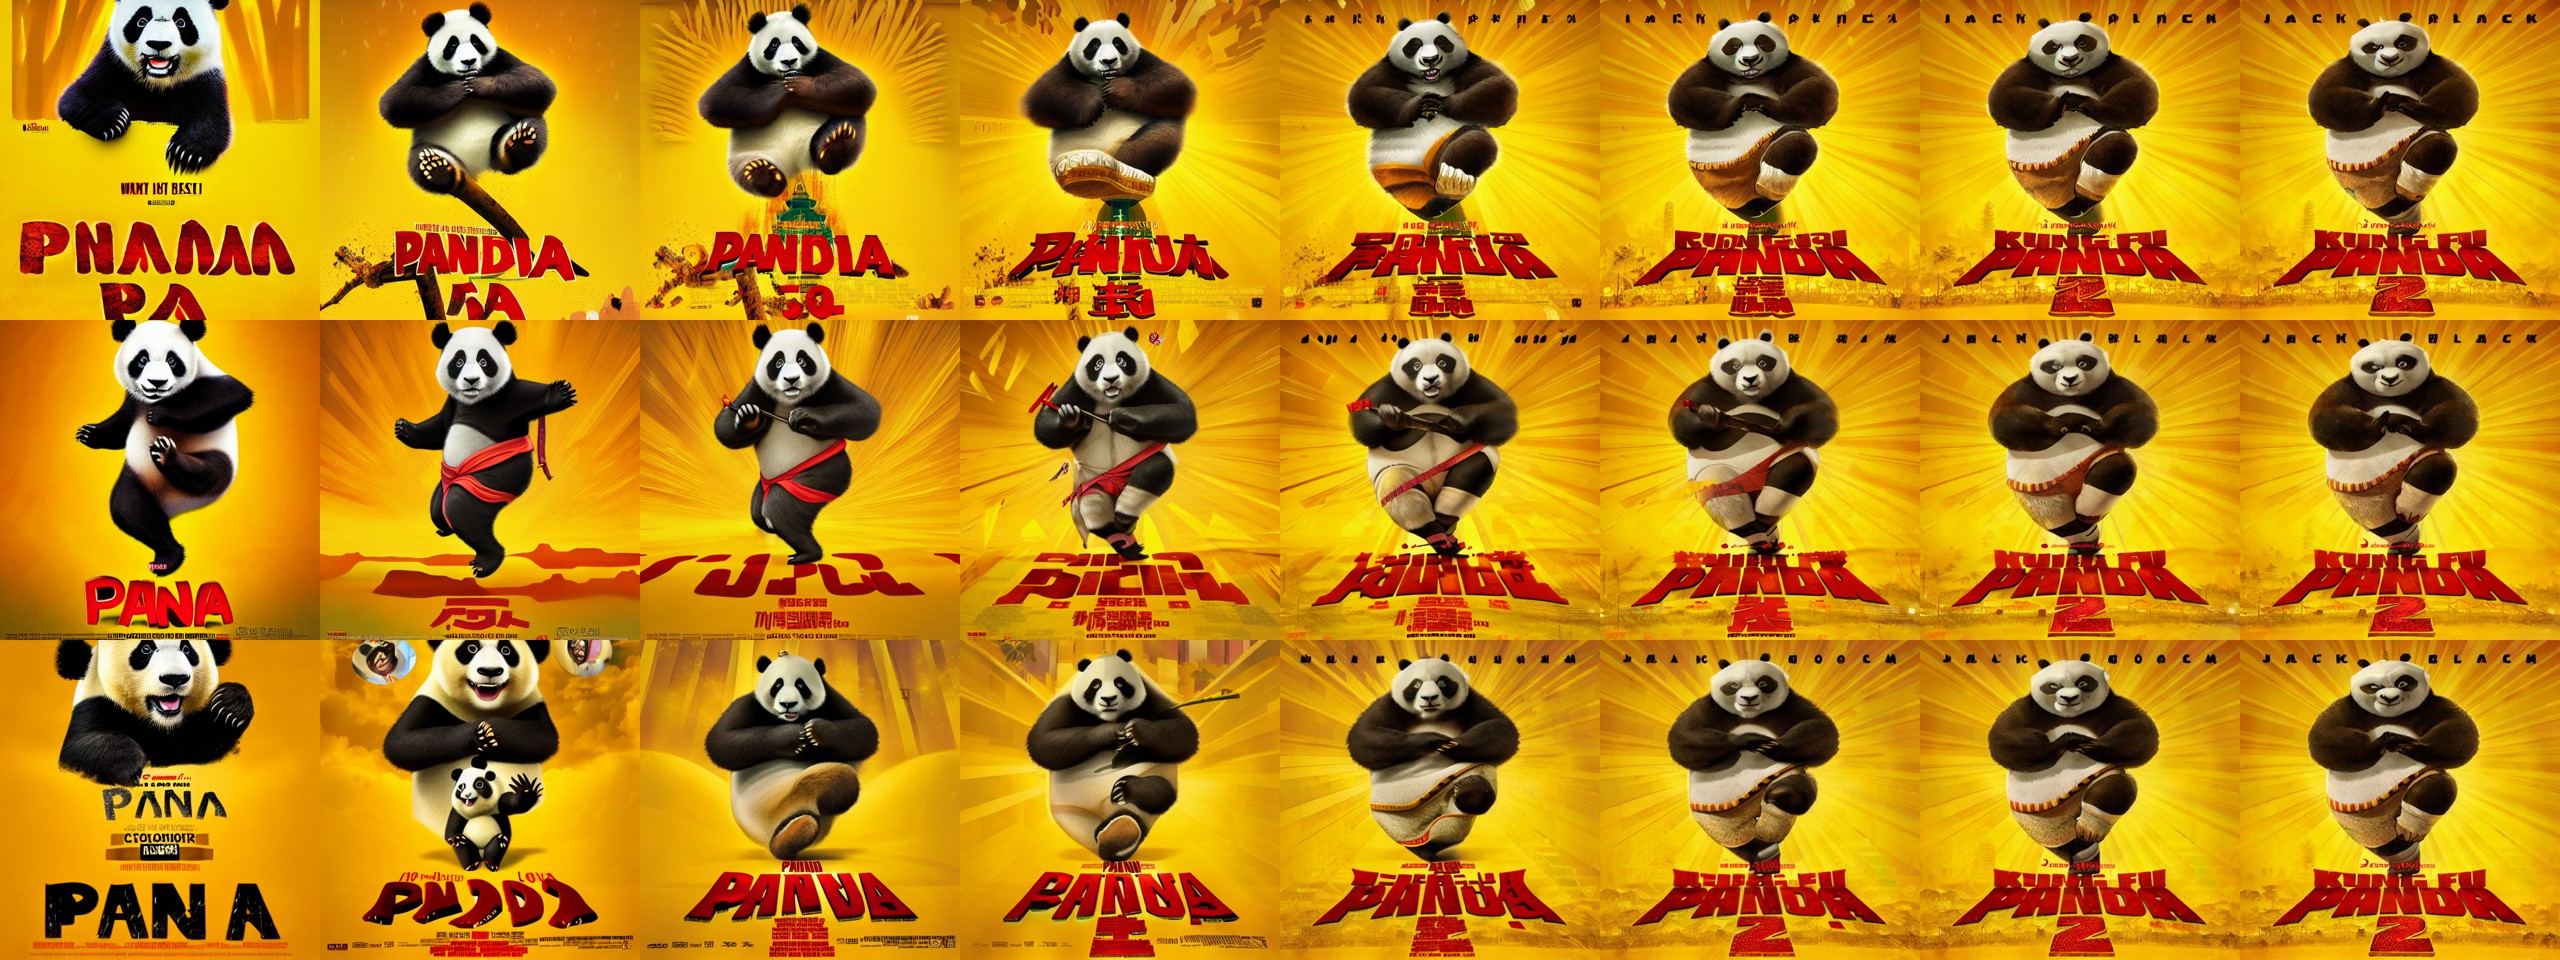 img2imgheavy_panda_movie_poster_with_yellow_b_kungfu_panda